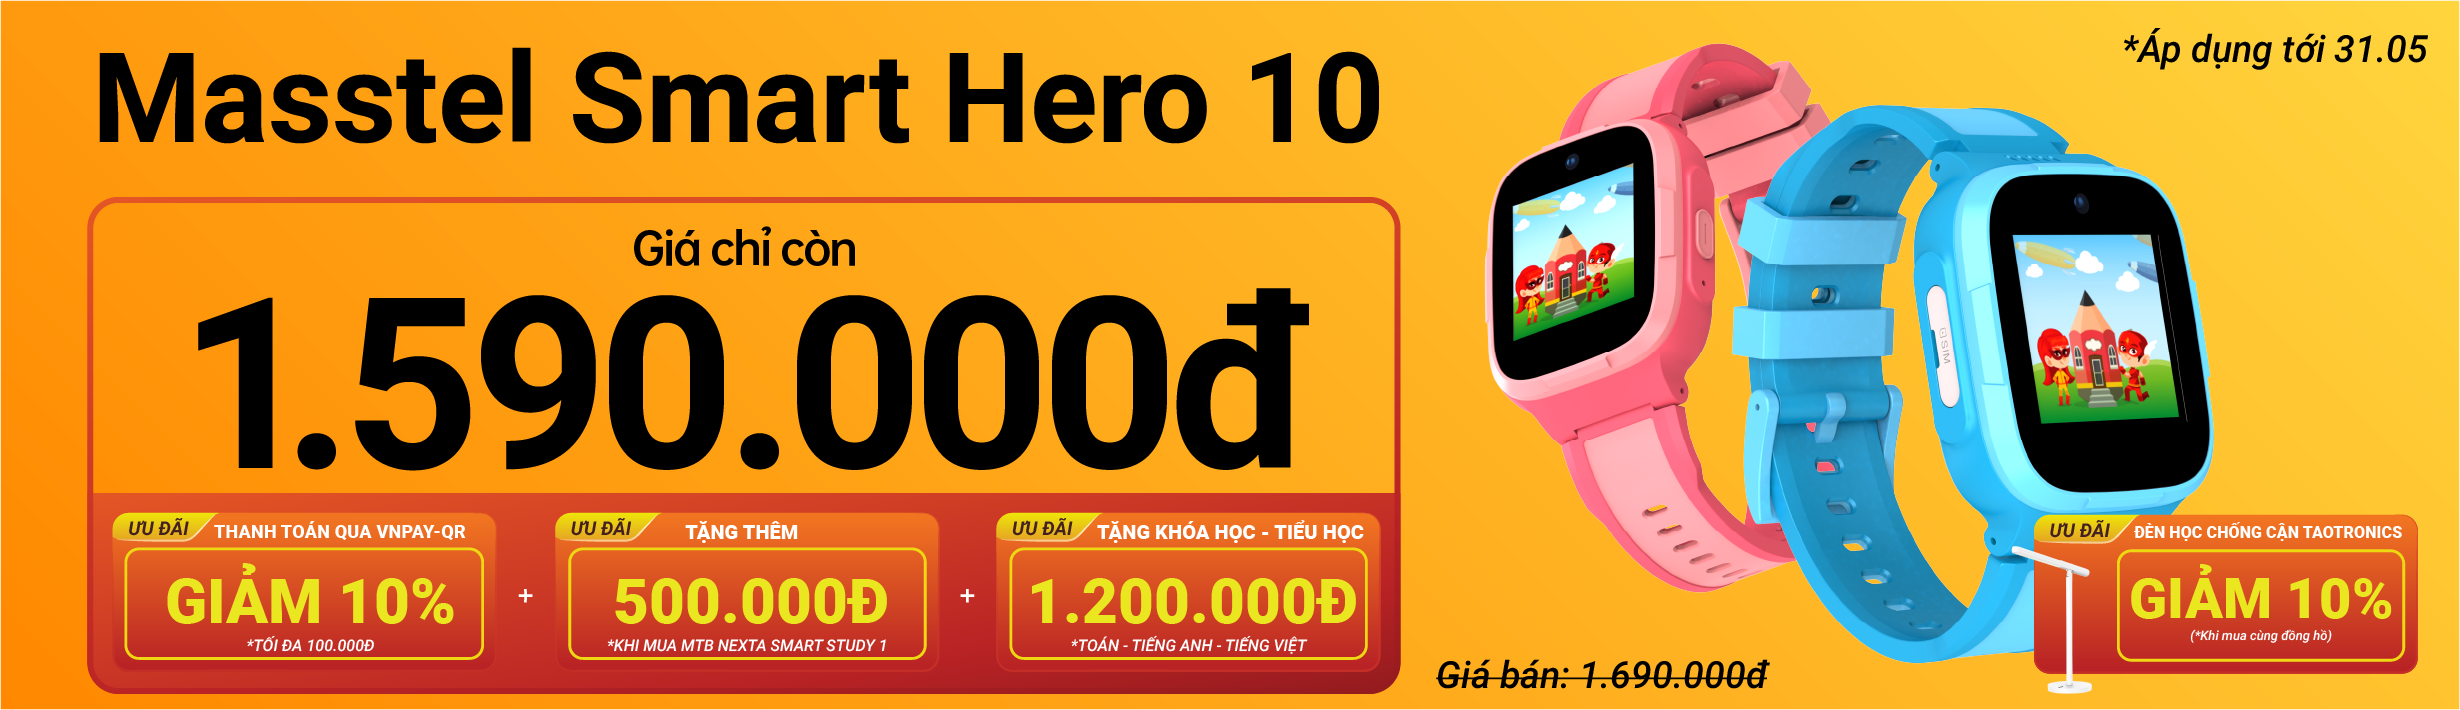 Masstel Smart Hero 10